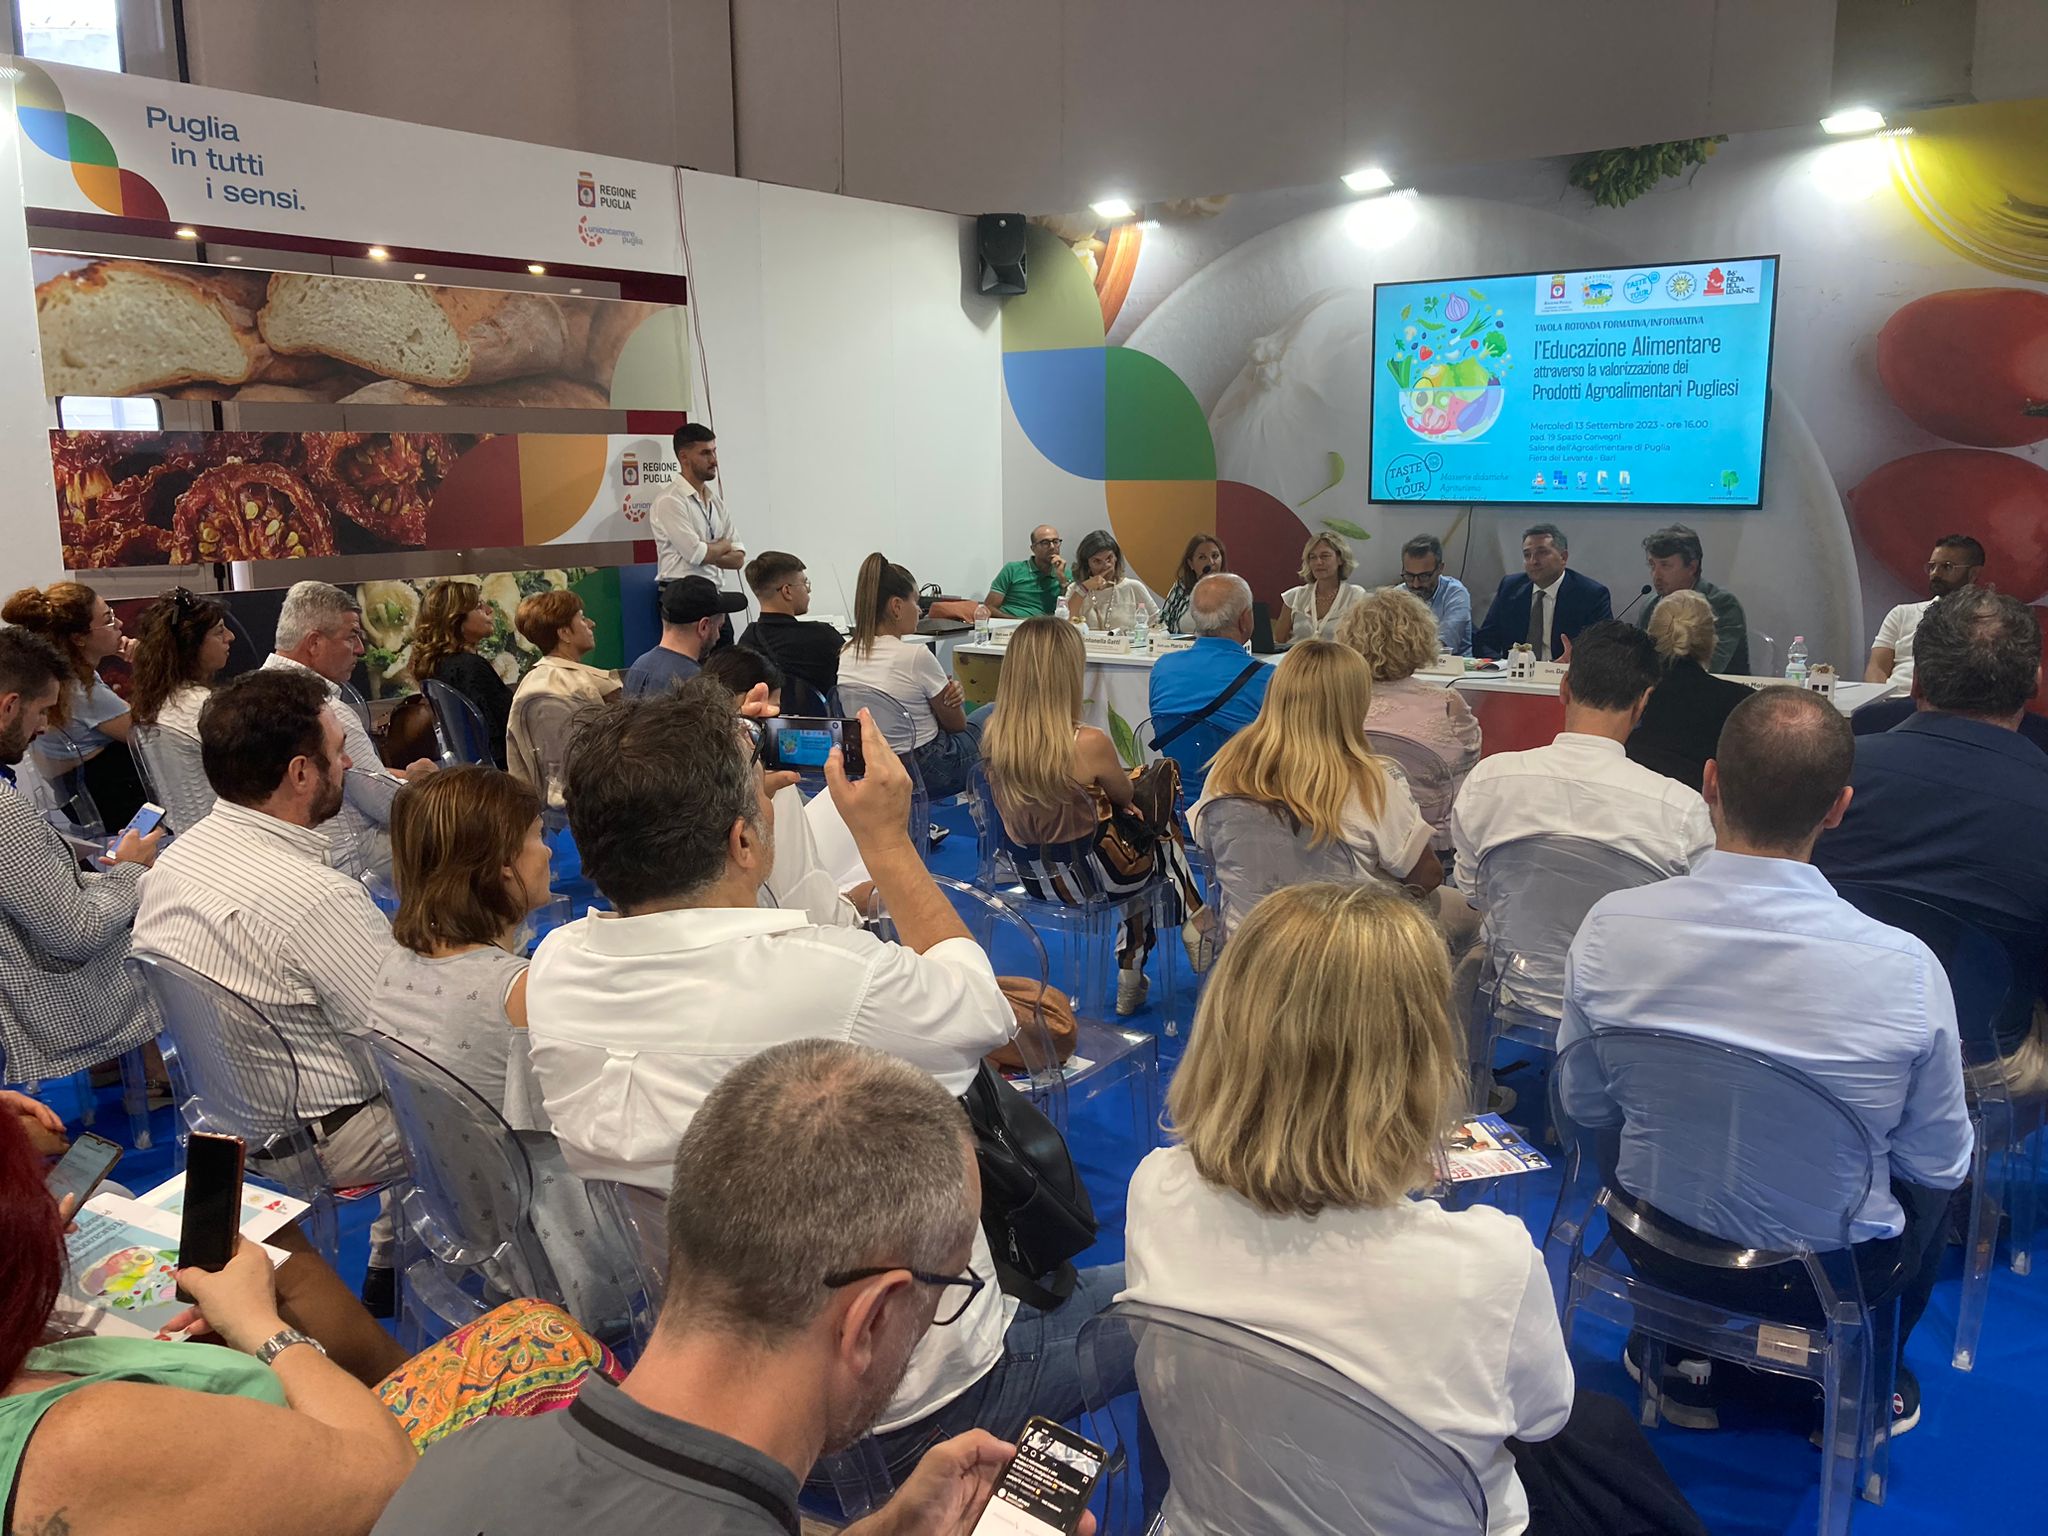 Galleria FdL 2023. Cibo, salute e innovazione: la Puglia investe nell'educazione alimentare - Diapositiva 3 di 6